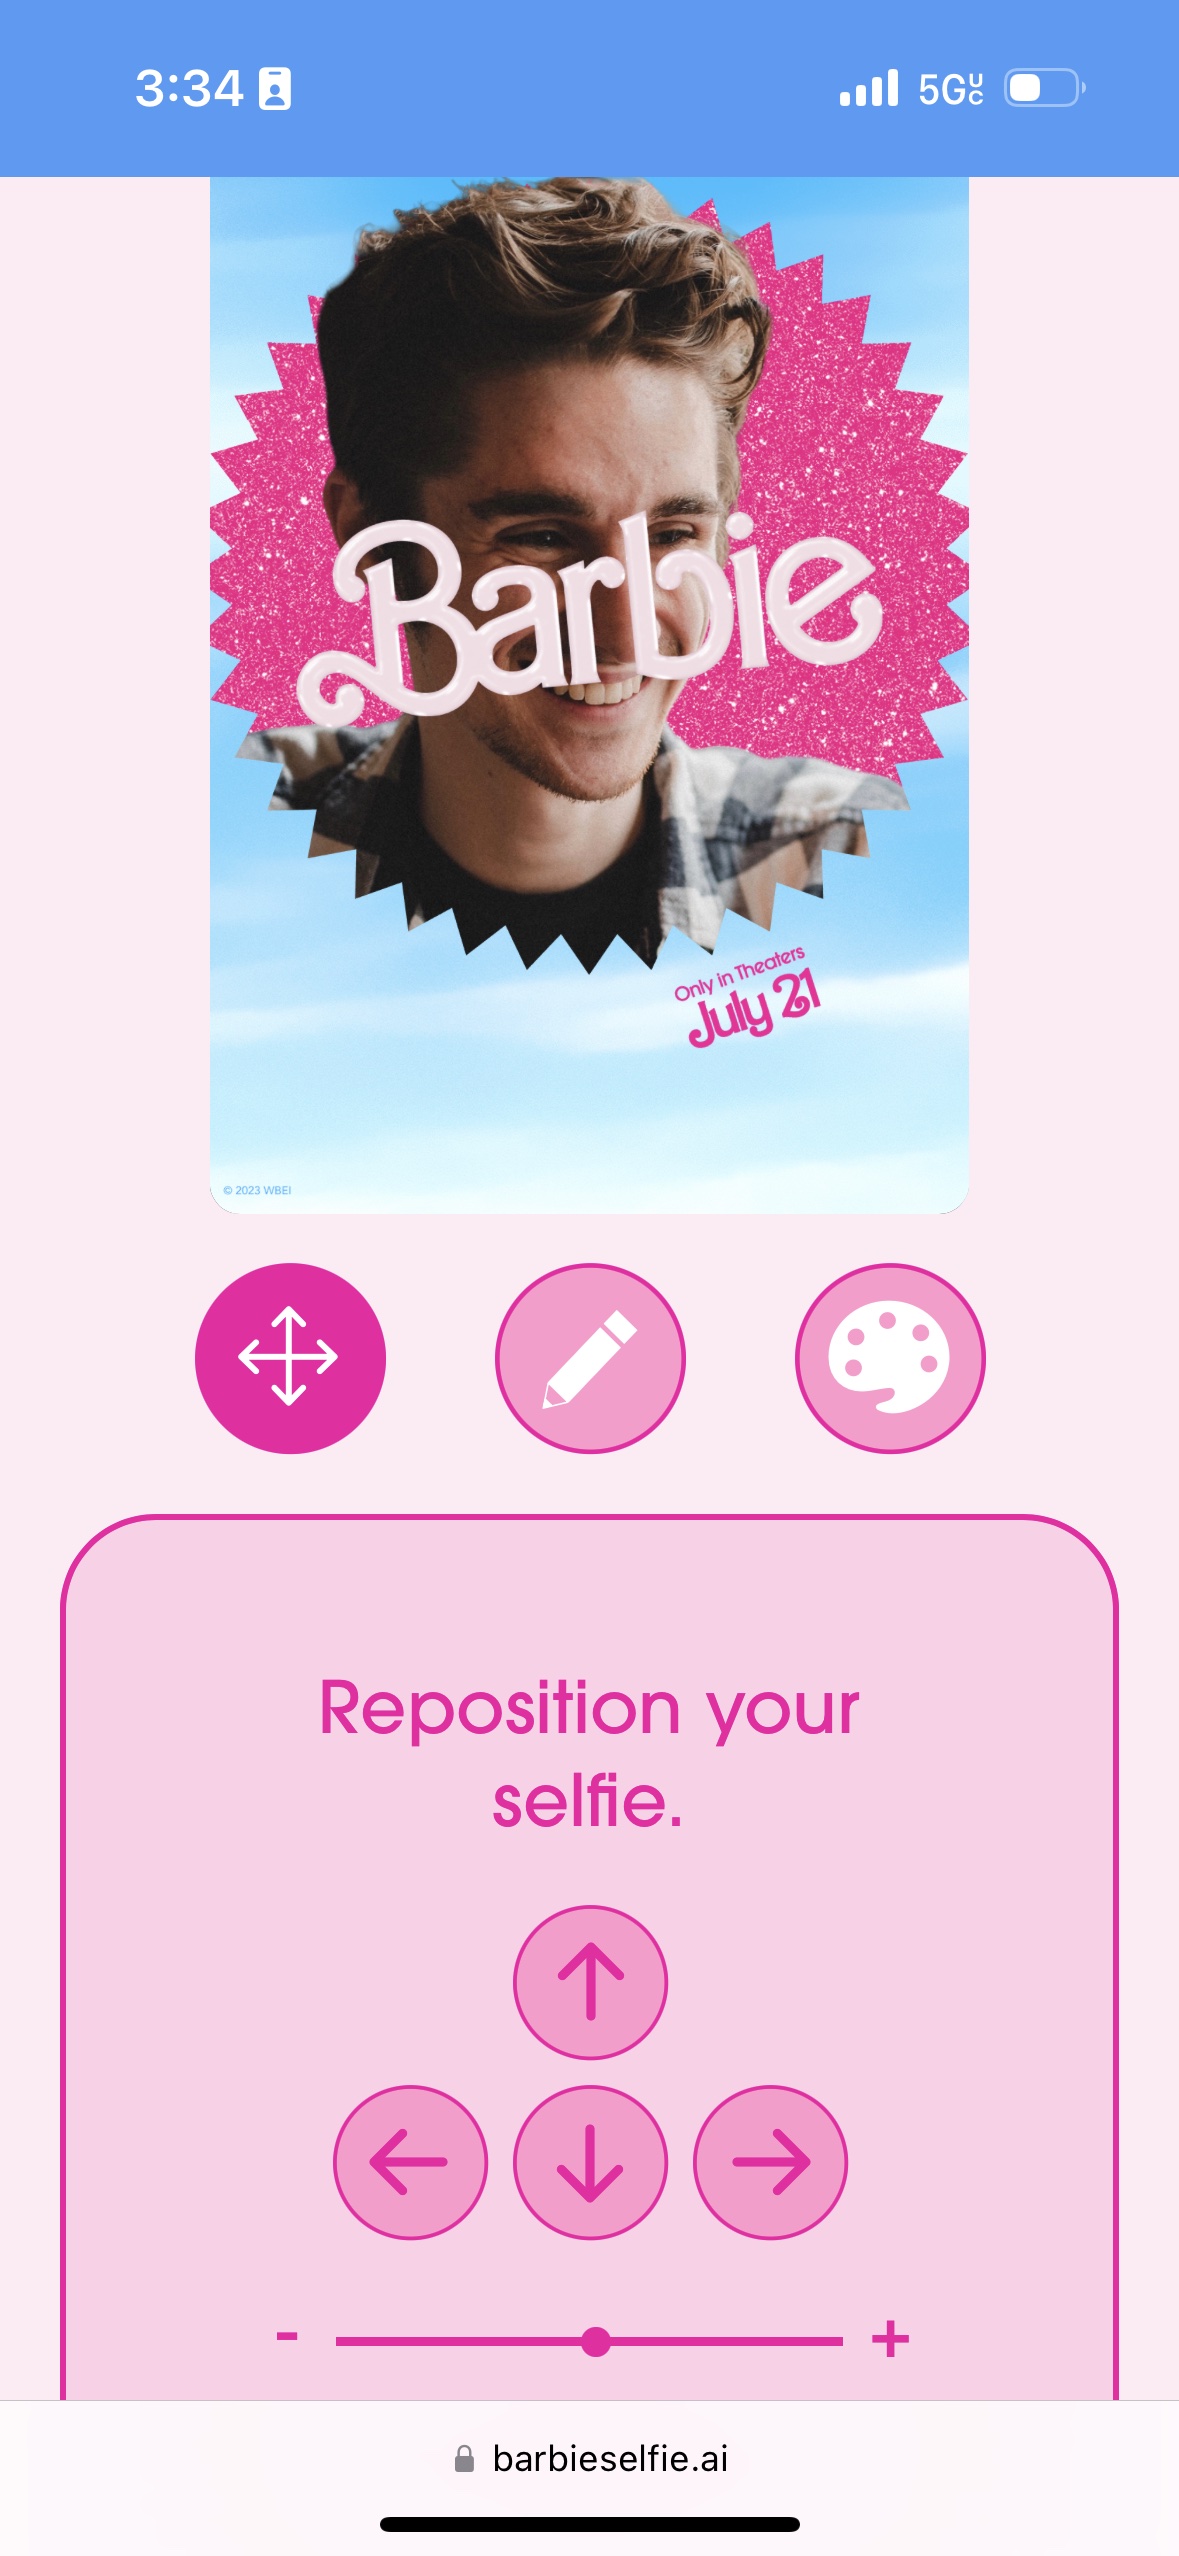 Captura de tela do site da Barbie Selfie Generator.